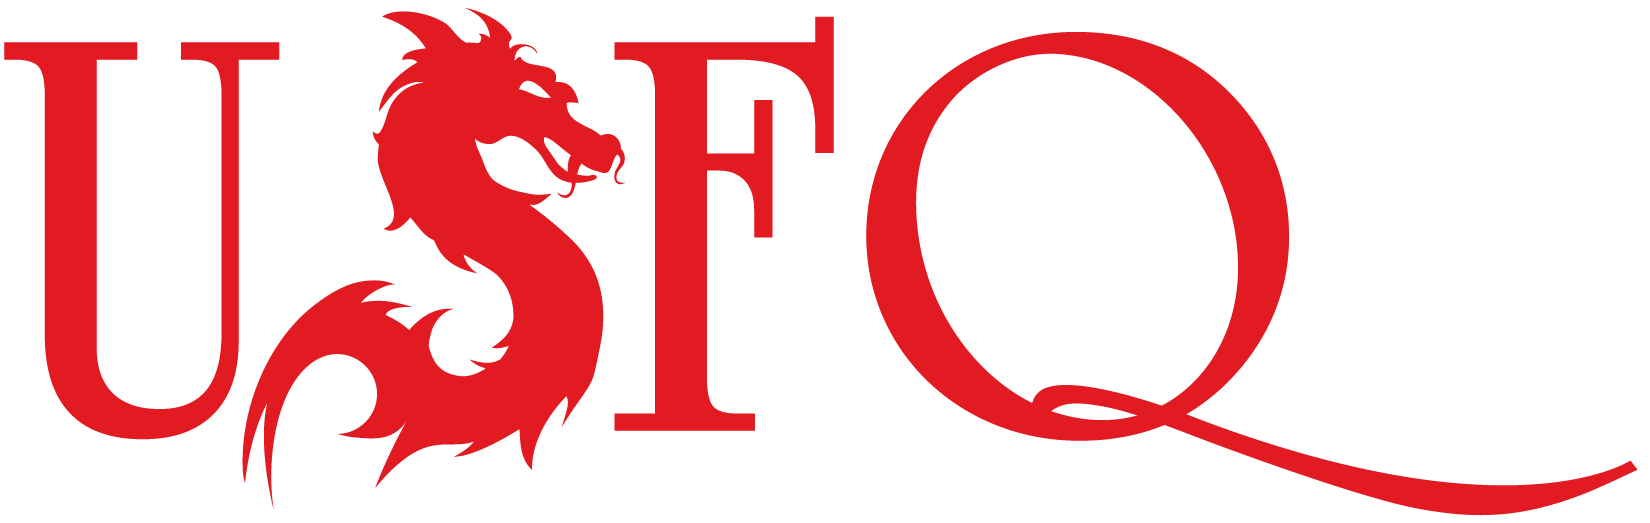 usfq-logo-admisiones